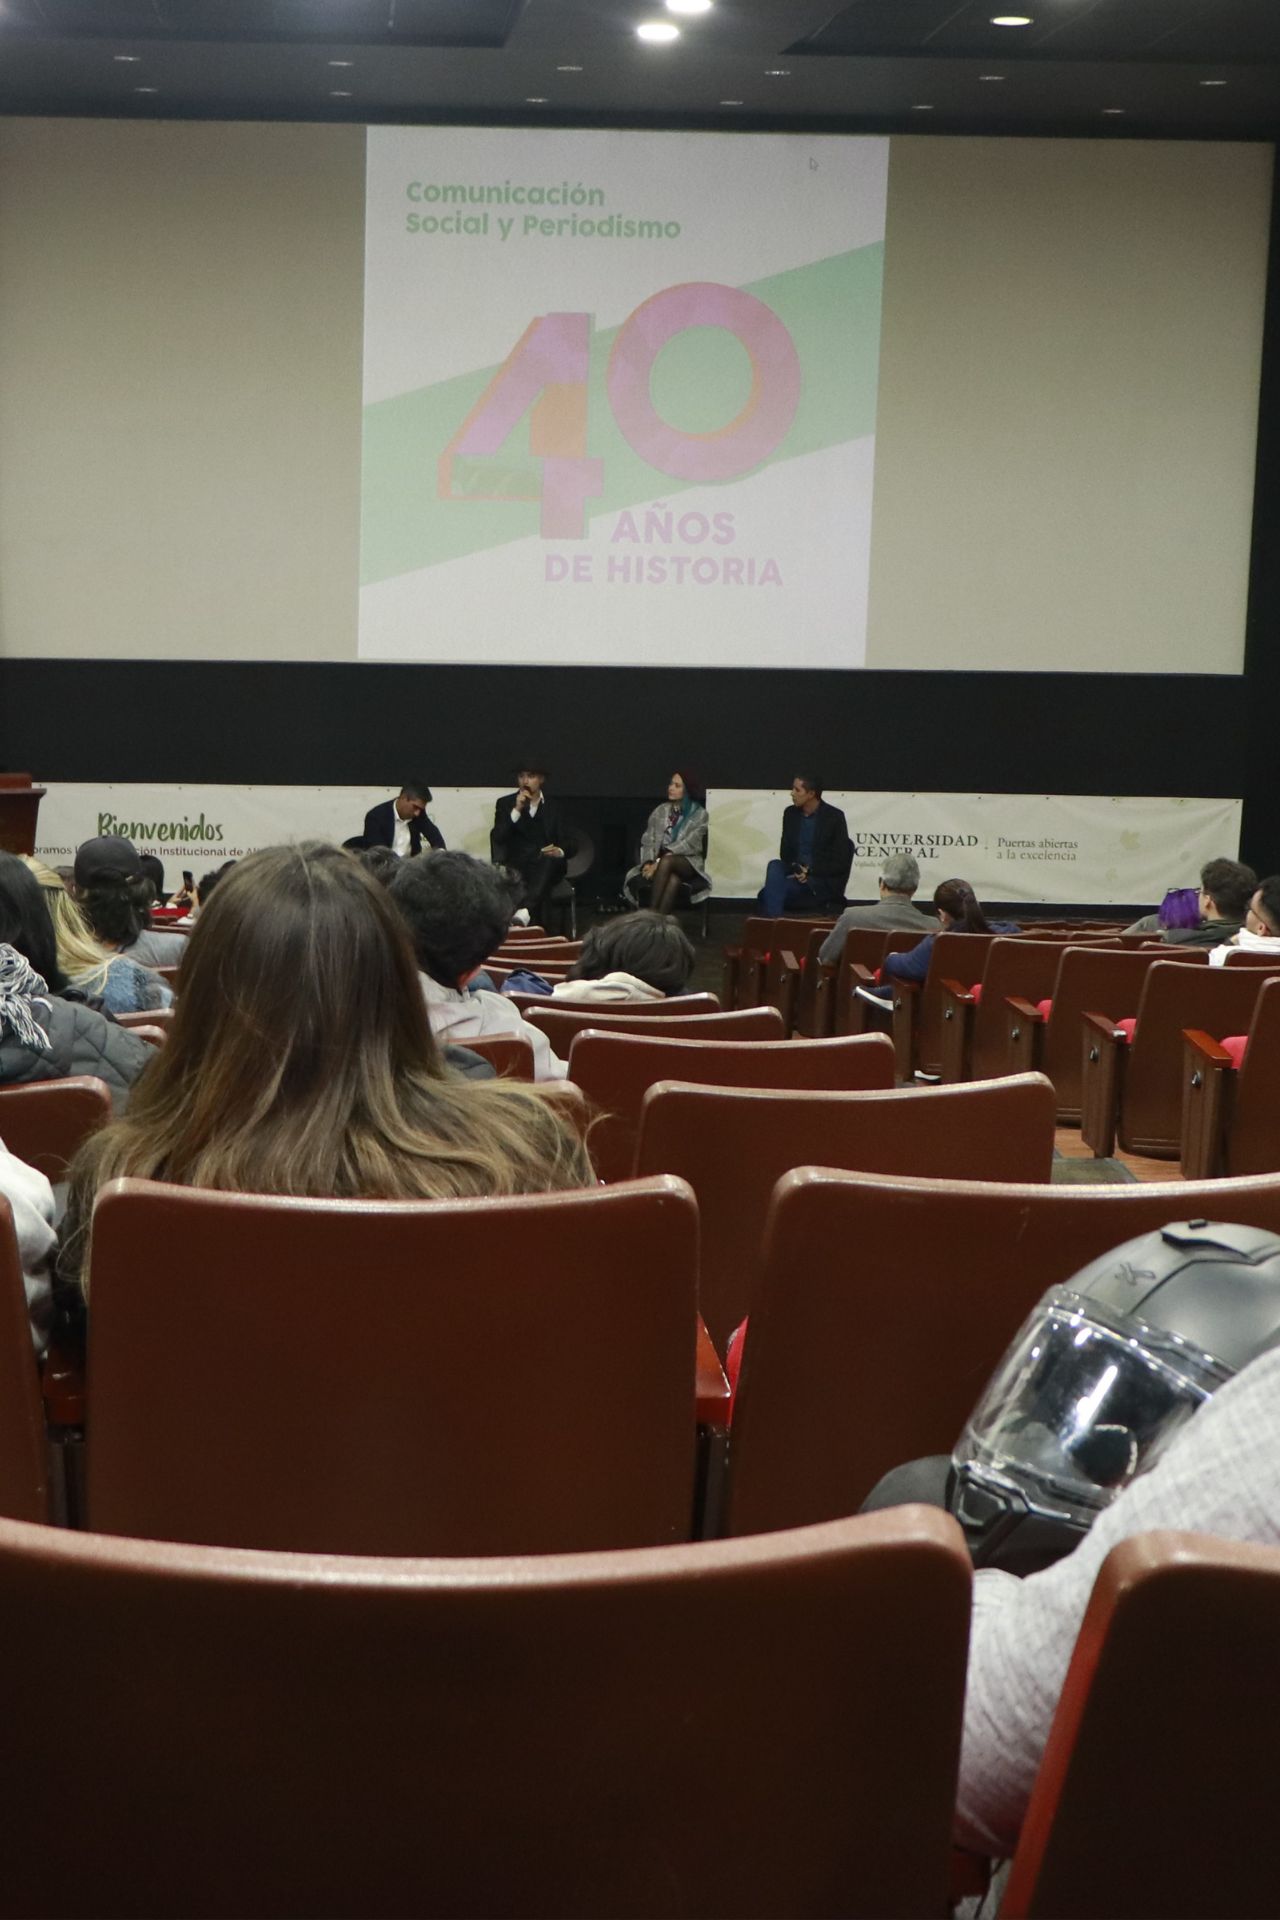 Comunicación social y Periodismo: 40 años construyendo historia en la UC